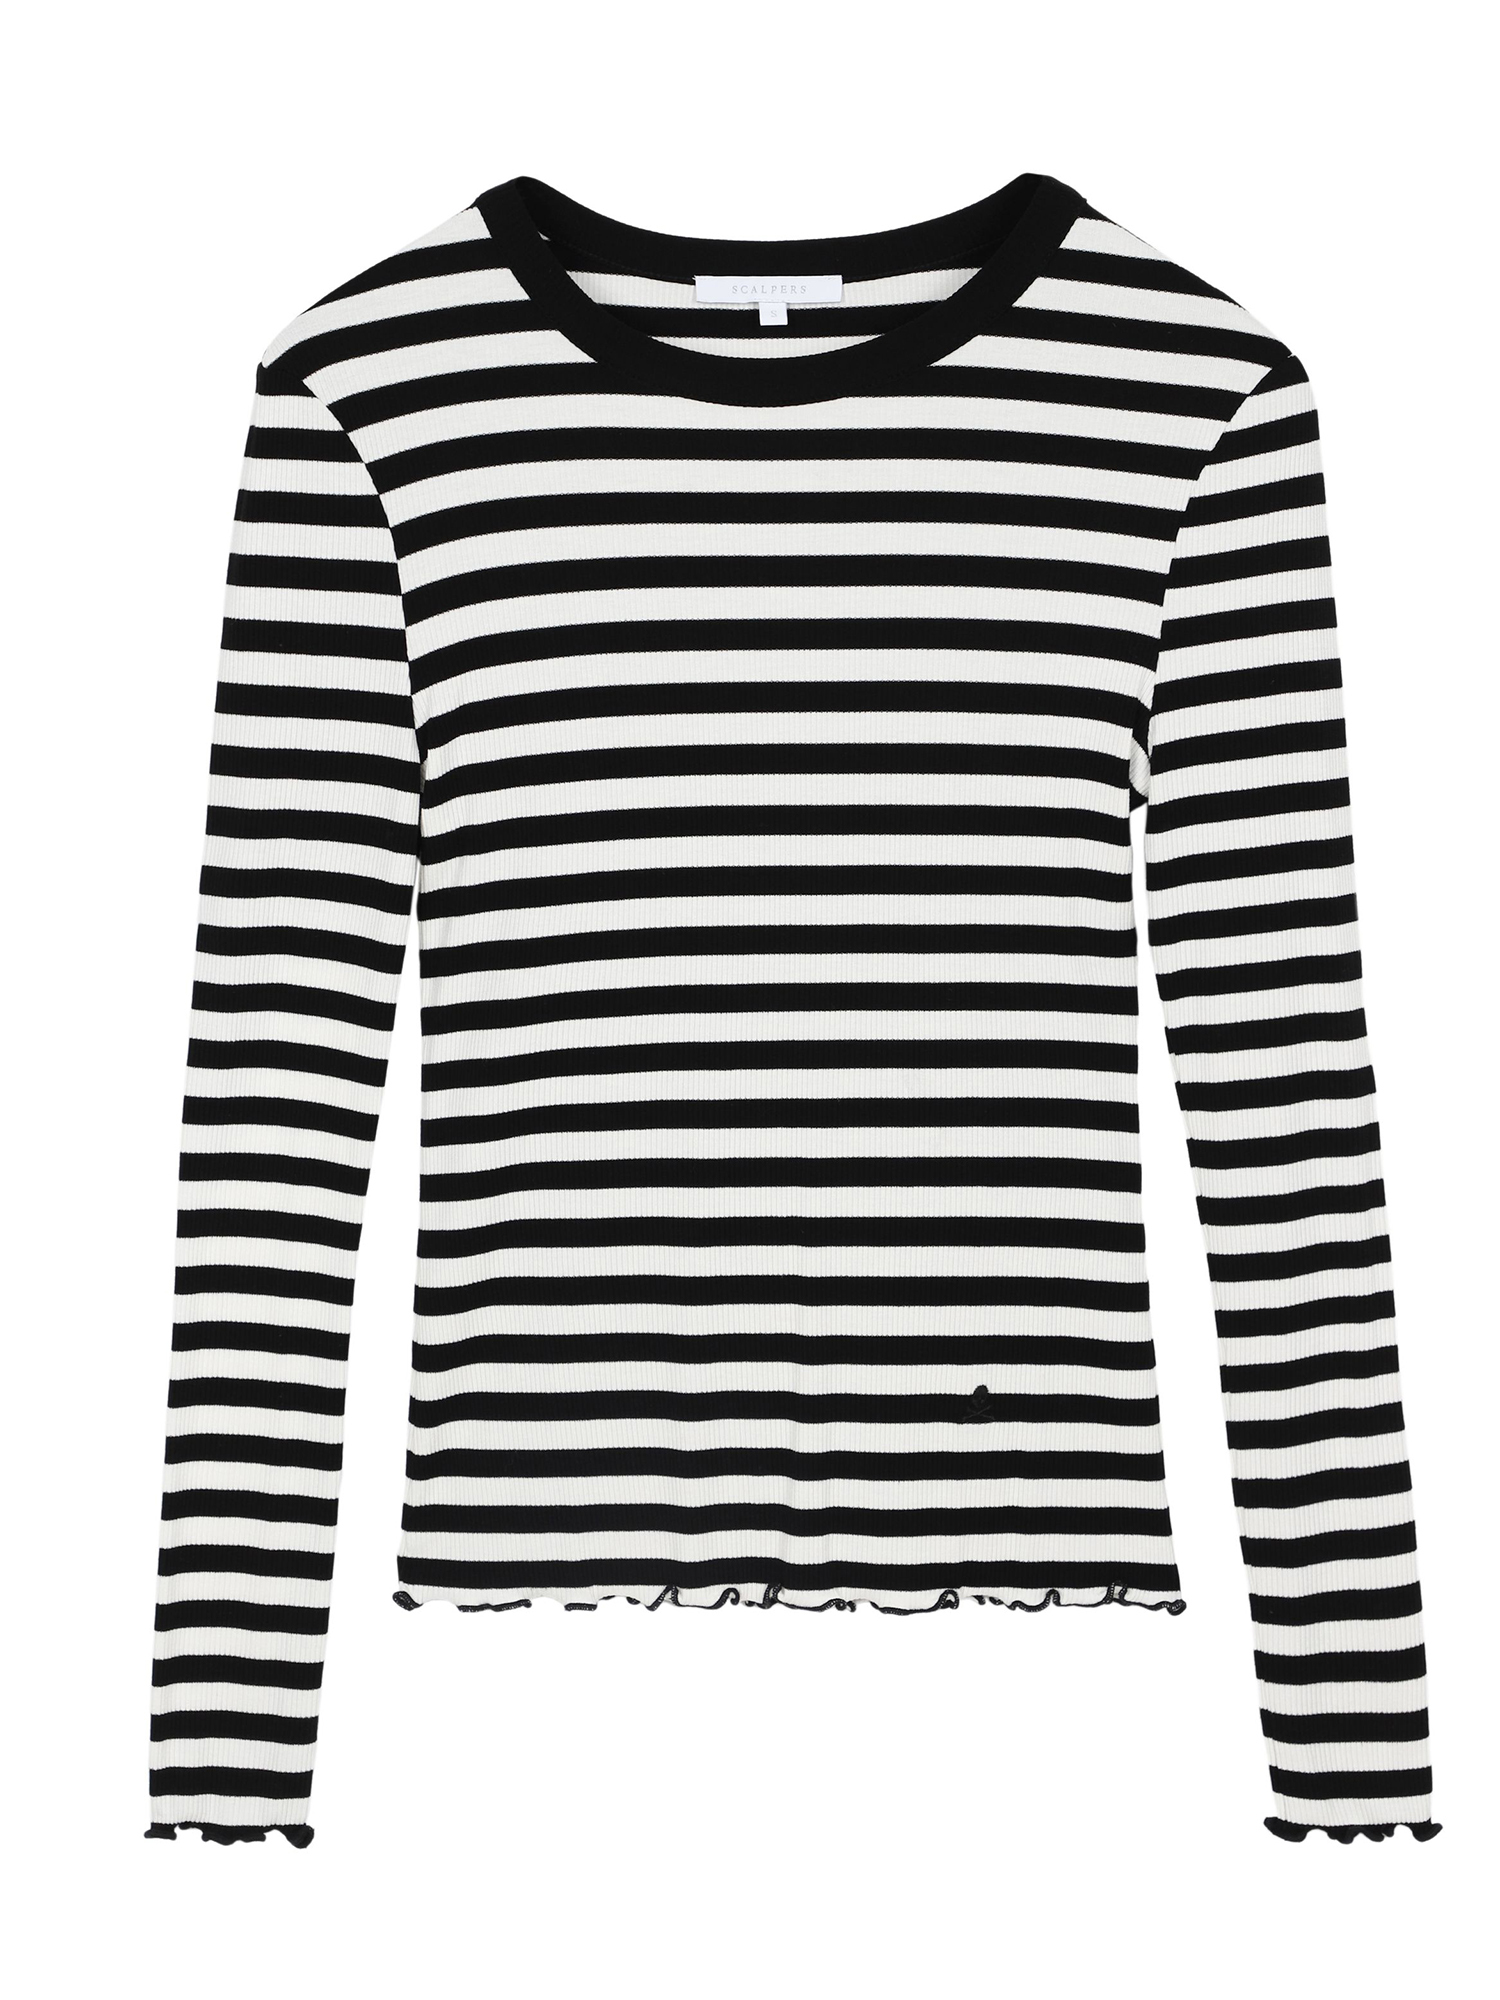 iZcW5 Odzież Scalpers Koszulka w kolorze Czarny, Białym 